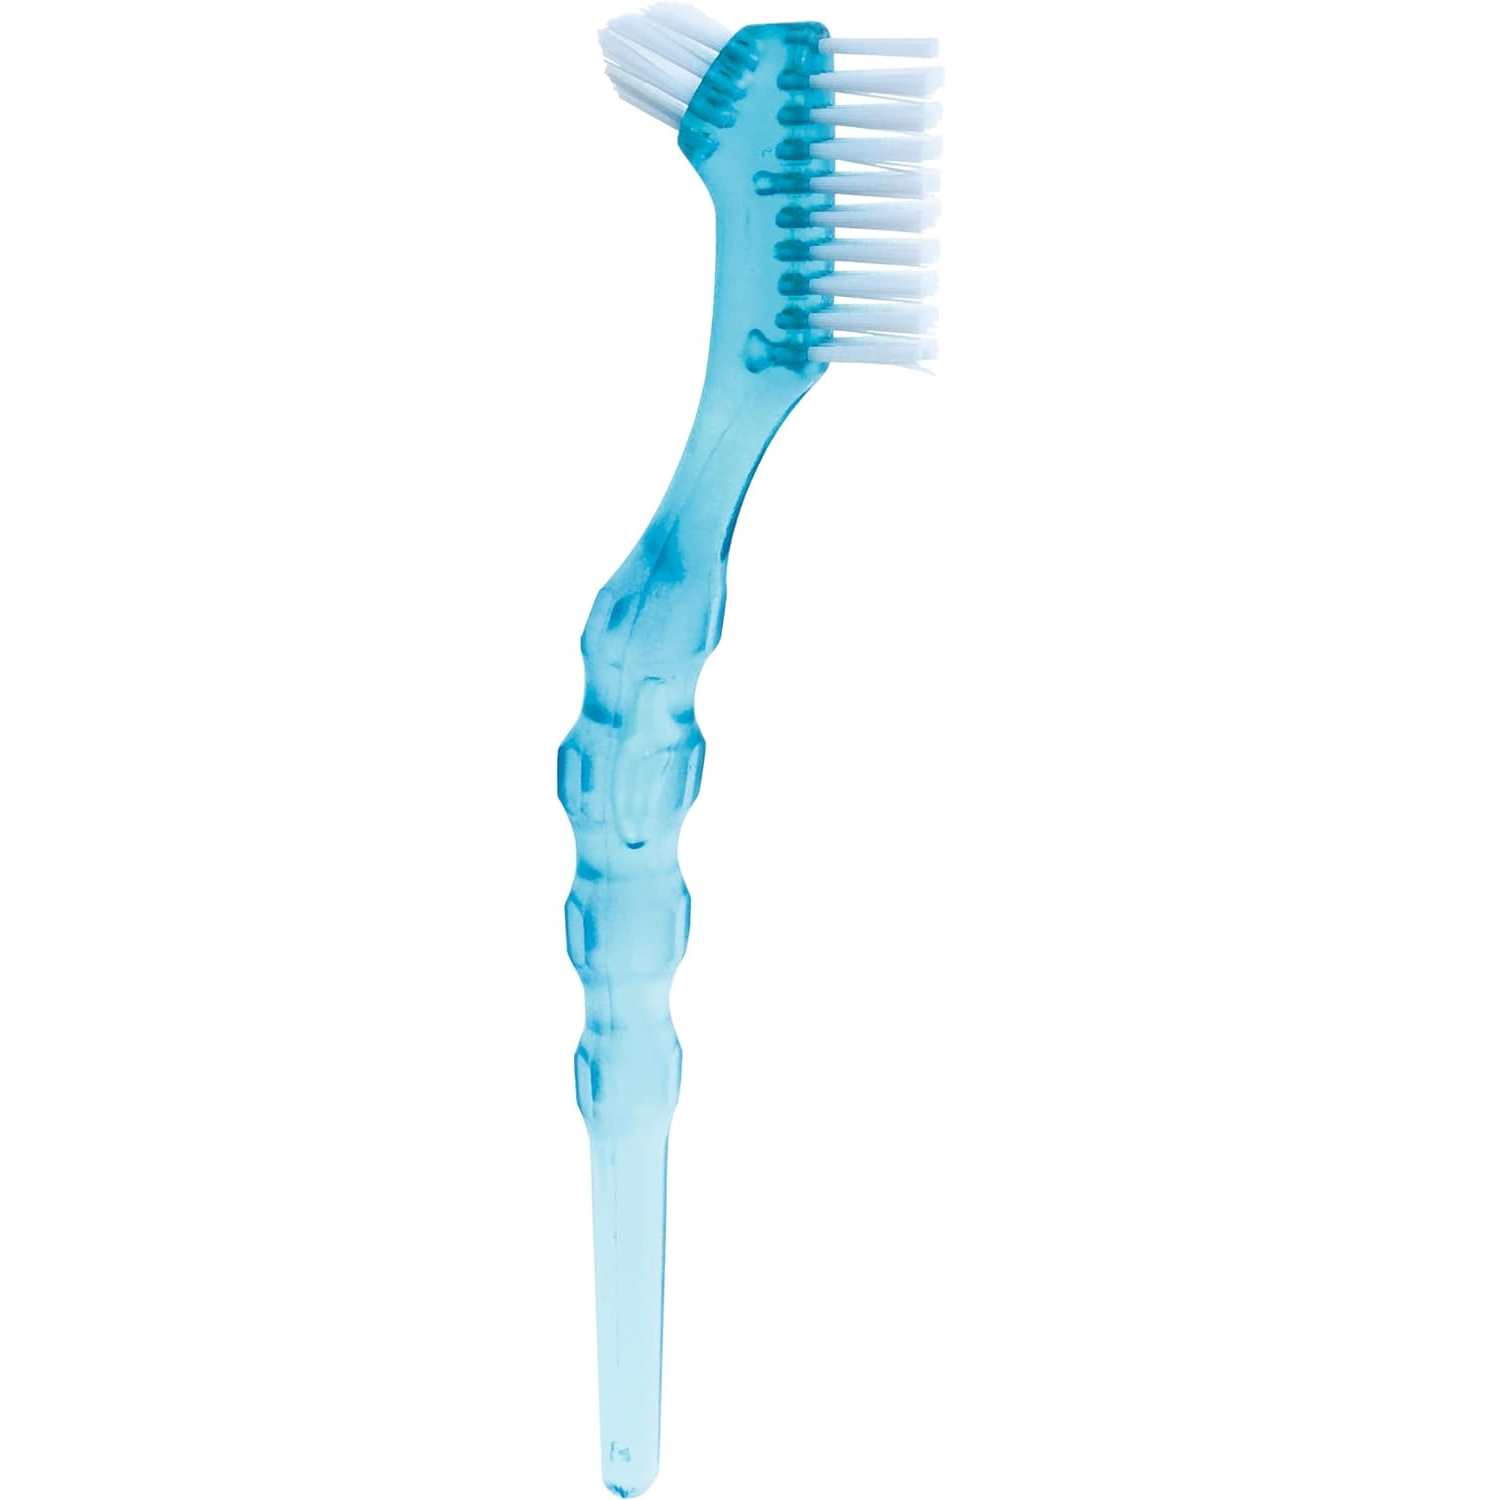 Зубная щетка Miradent Protho Brush для ухода за зубными протезами, голубая